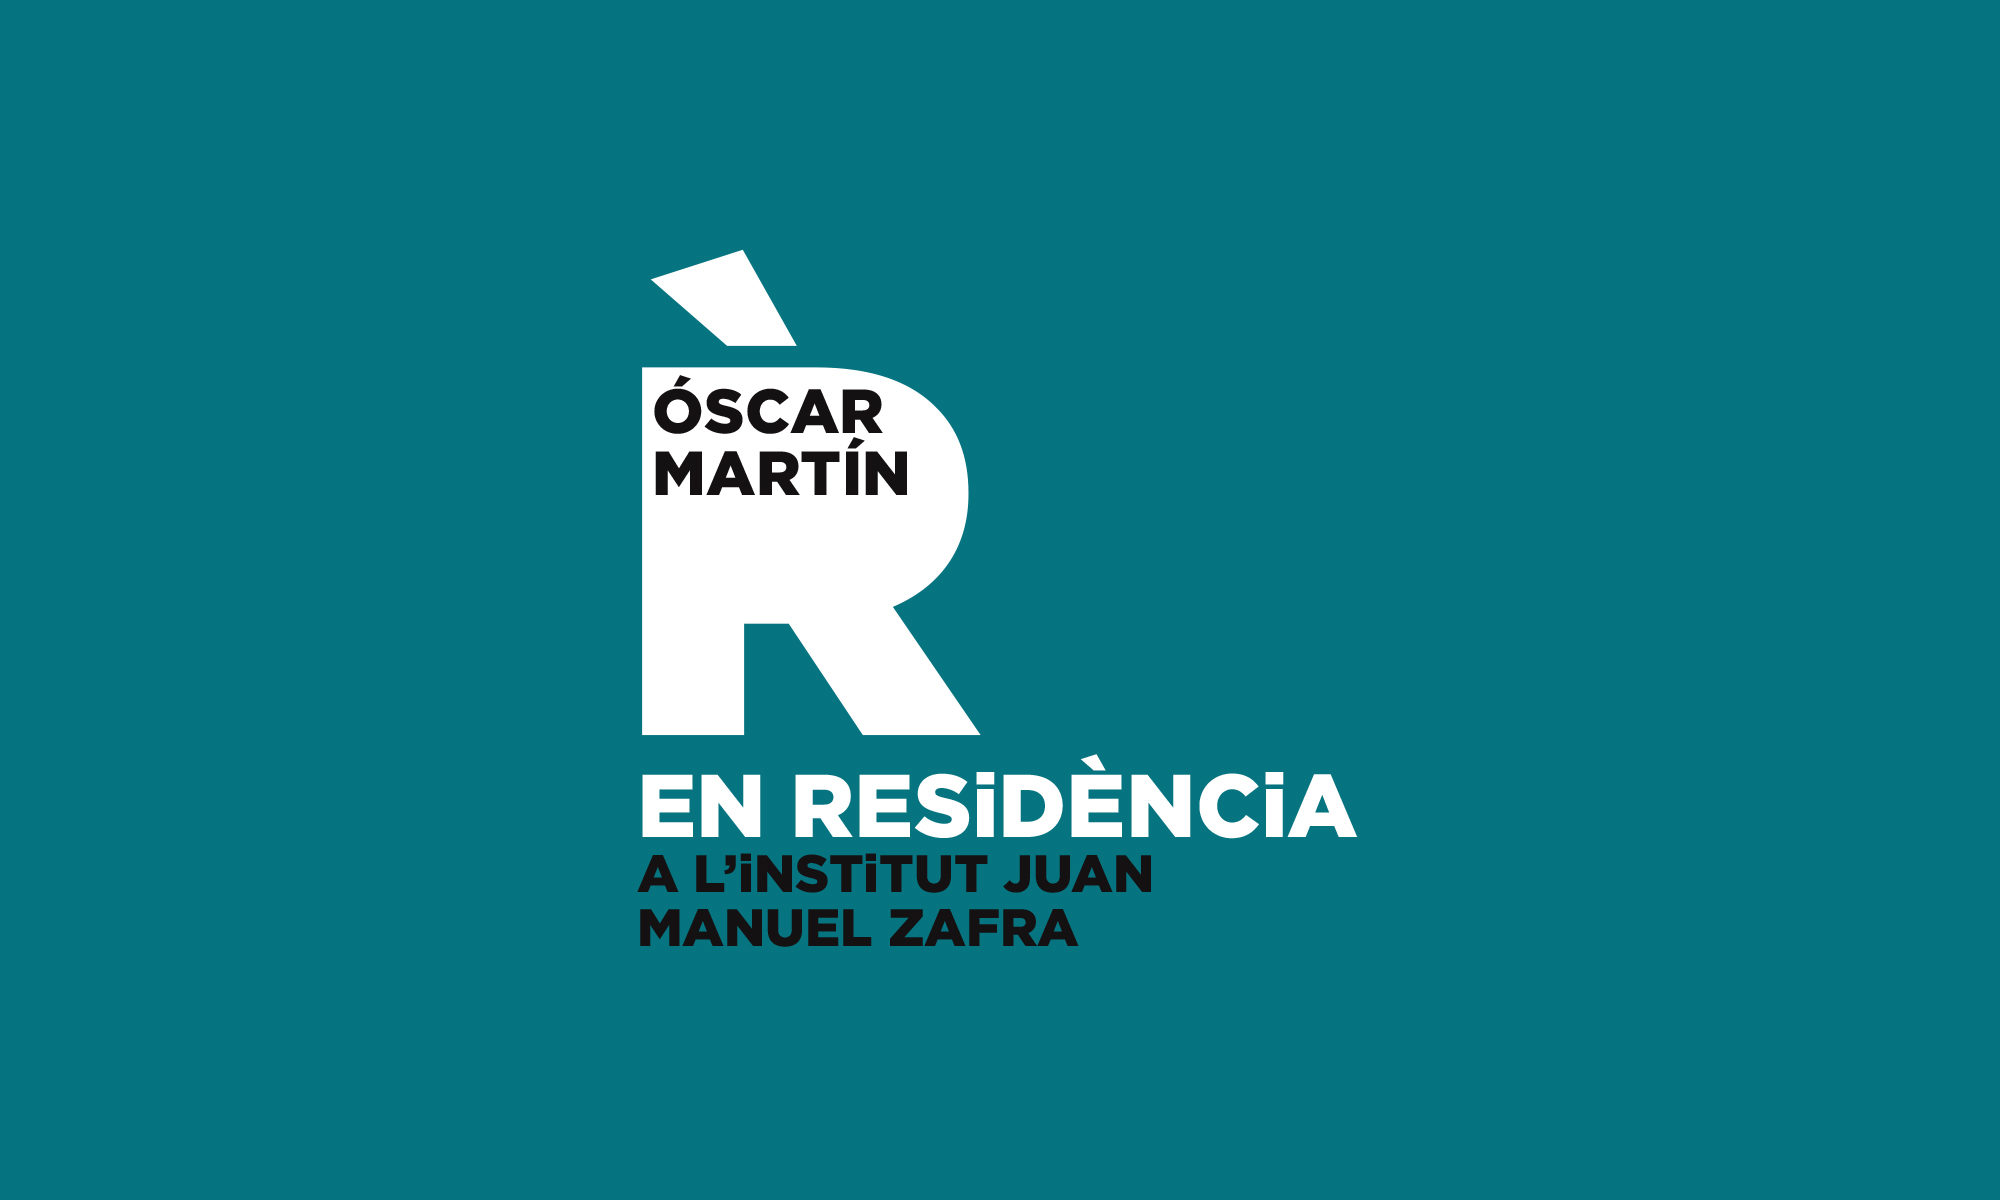 Óscar Martín EN RESIDÈNCIA